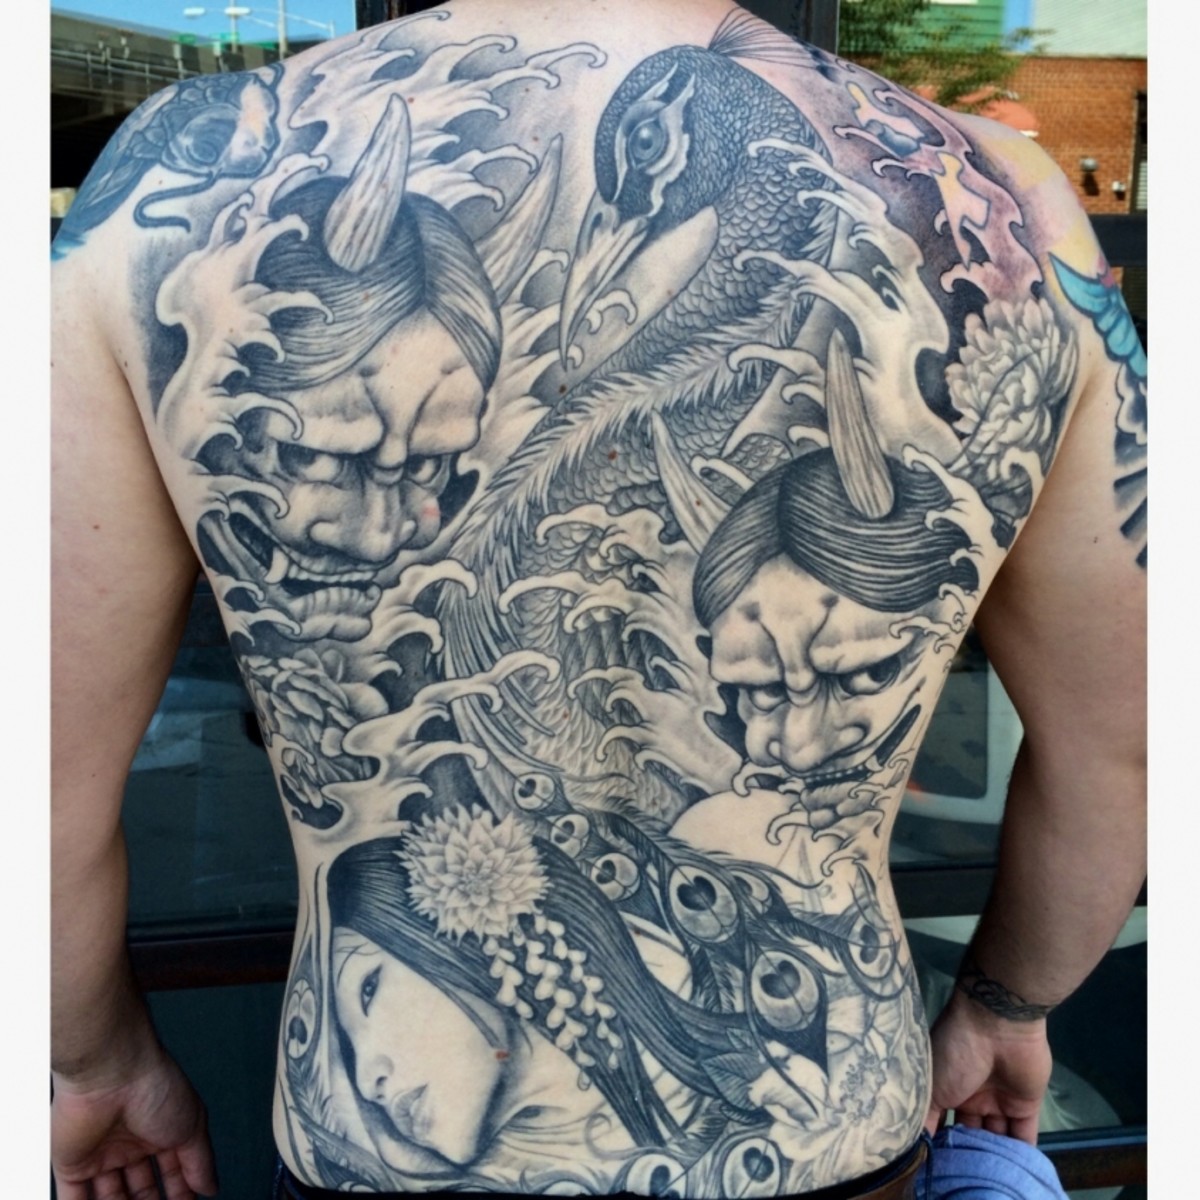 Josh Lordin tatuointi